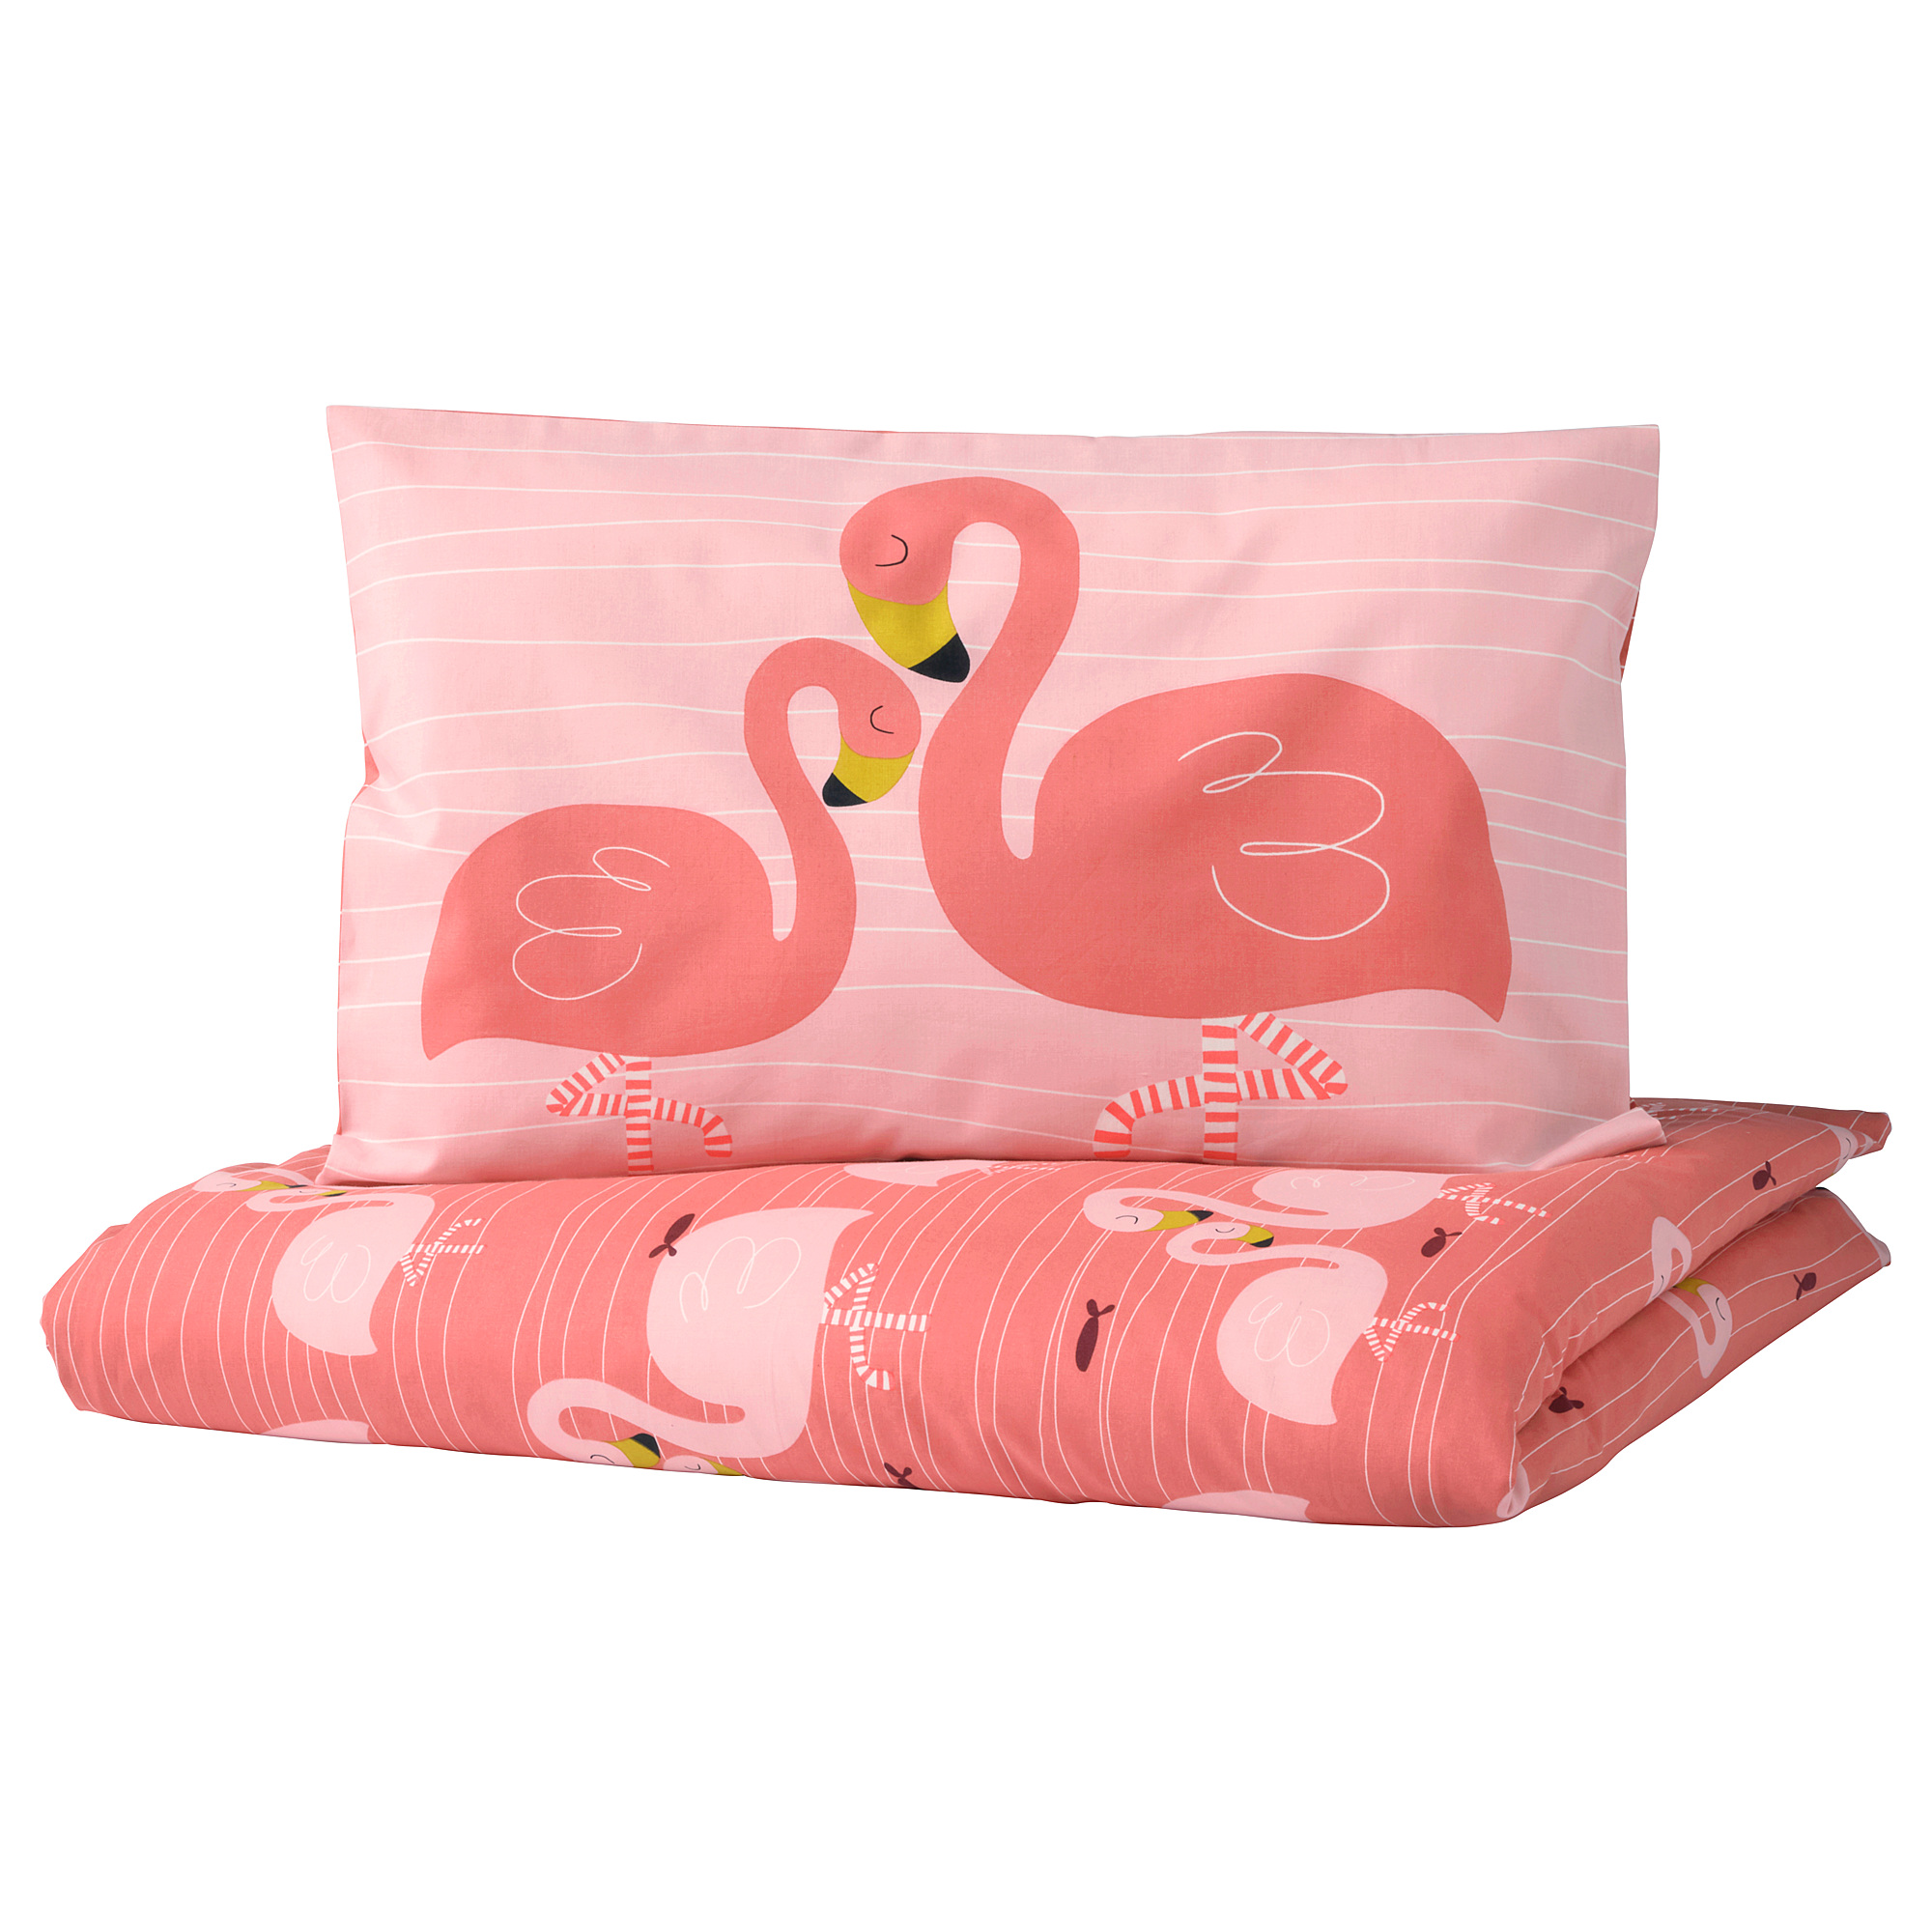 flamingo cot sheets